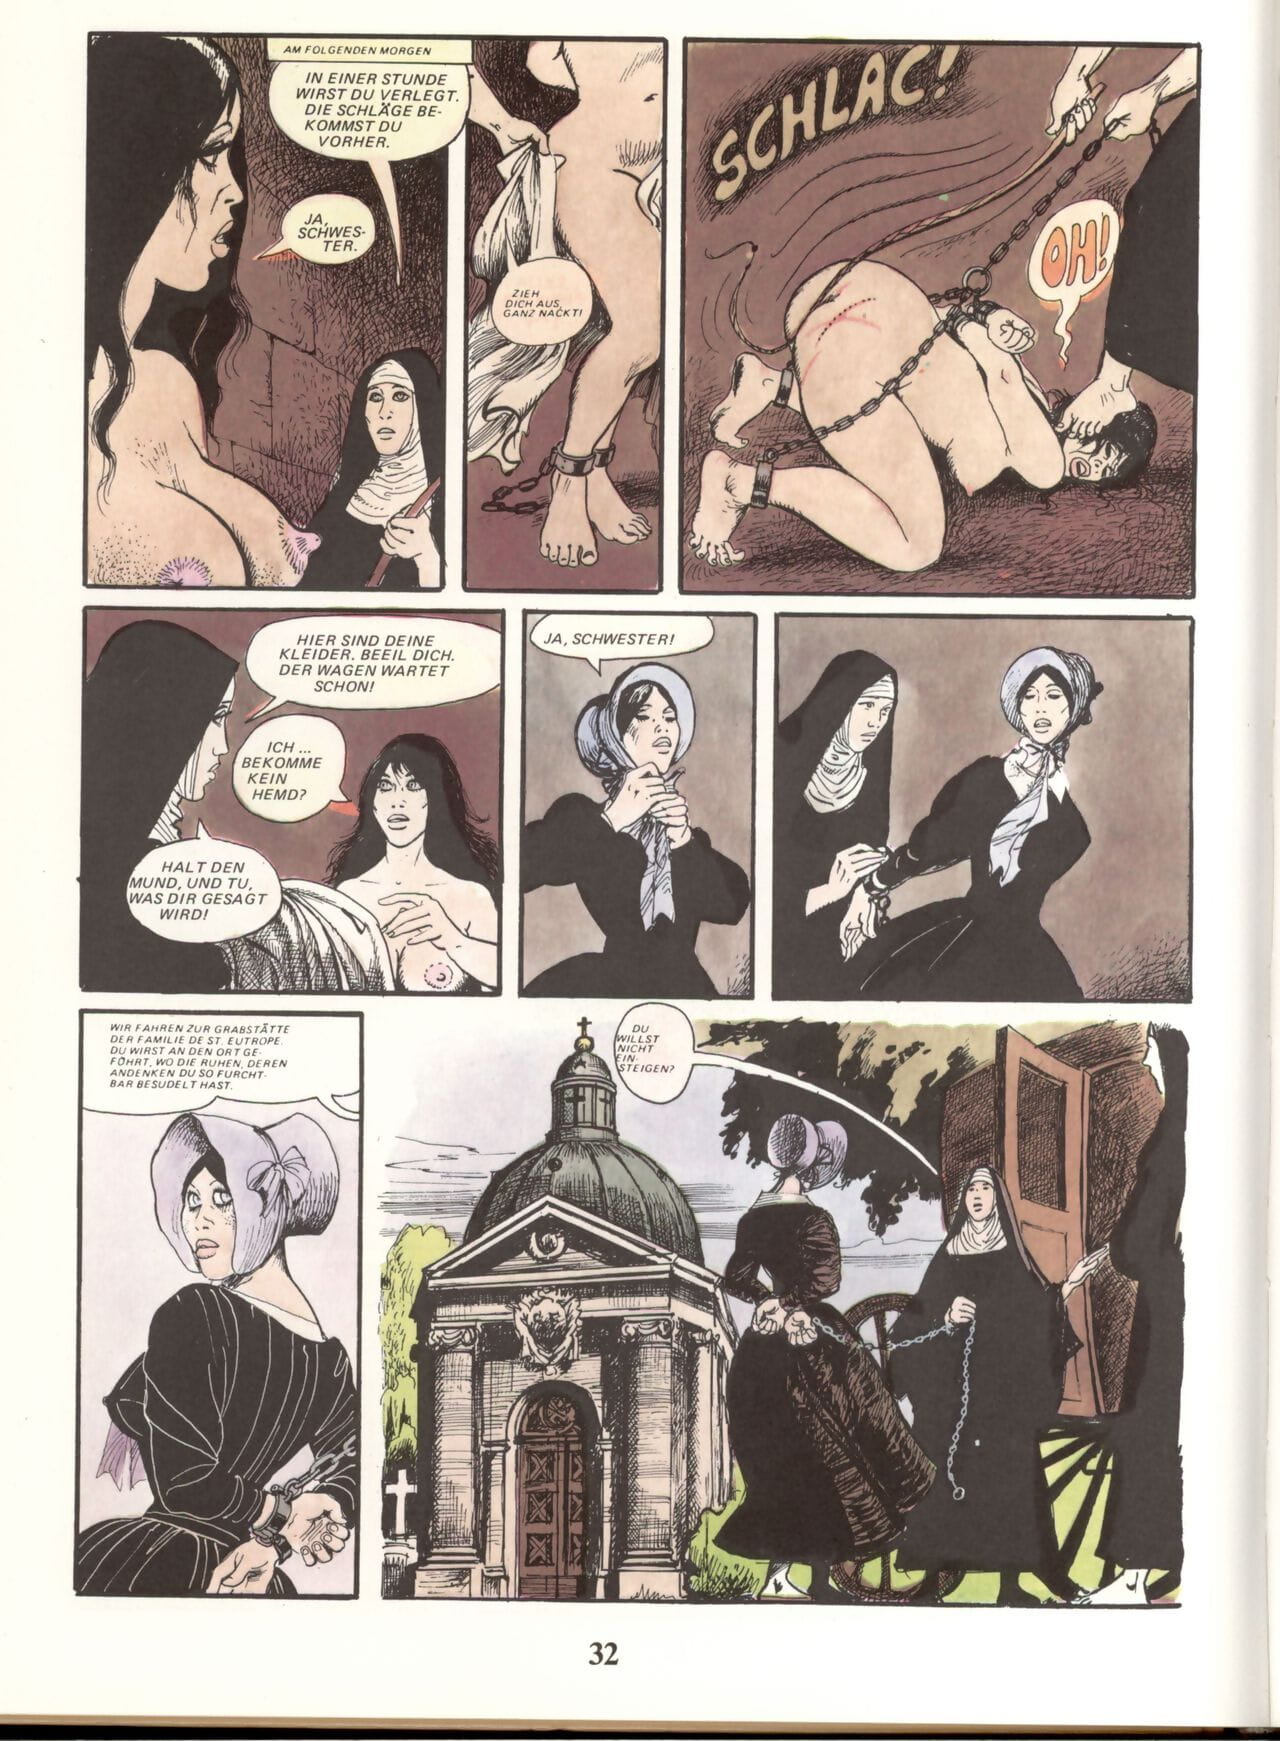 Marie Gabrielle de Saint eutropo #02 parte 2 page 1